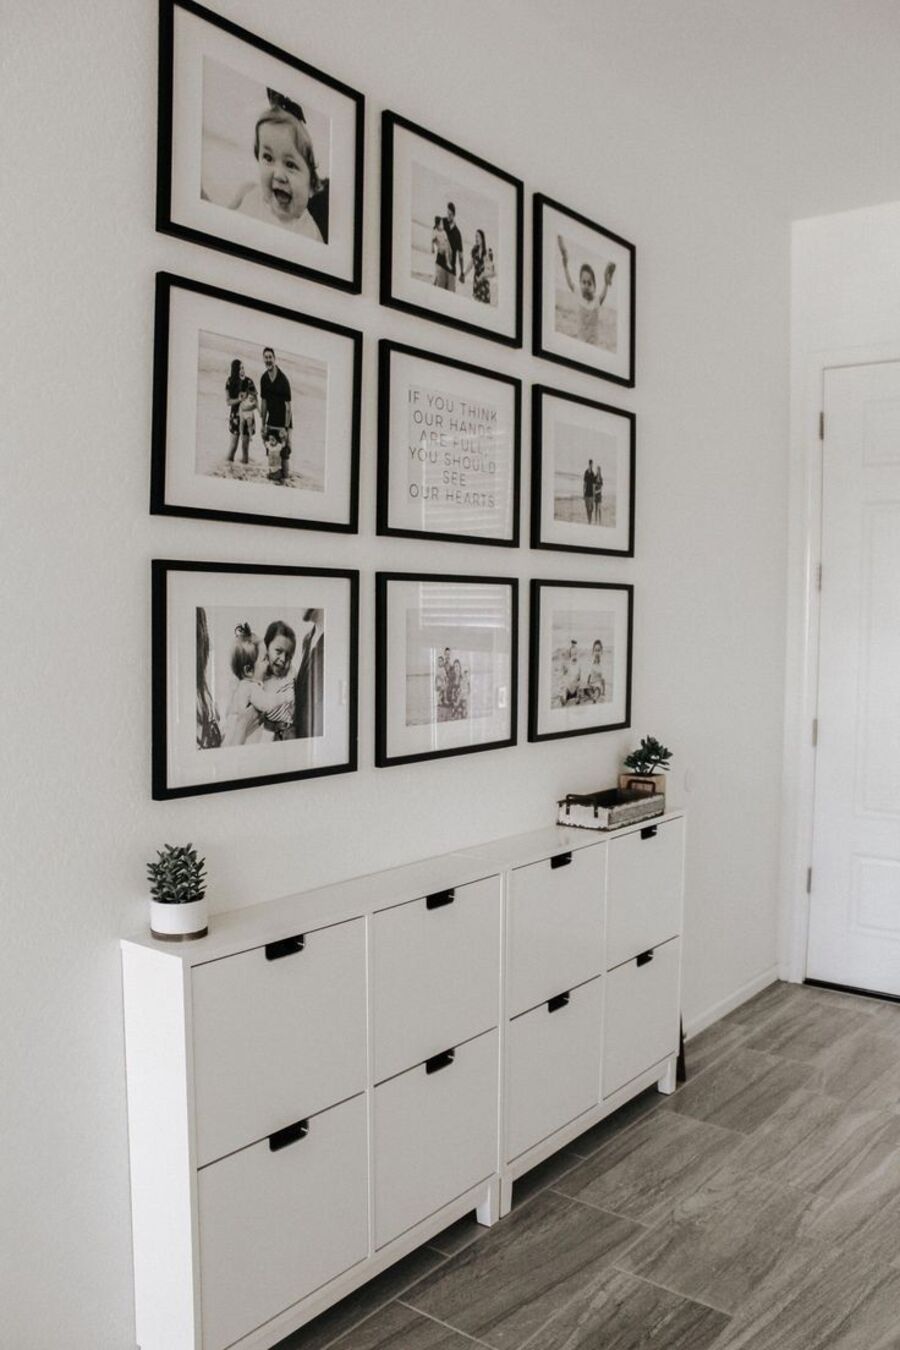 Pasillo de paredes blancas con 9 fotografías en blanco y negro, enmarcadas en marcos negros. Debajo hay un mueble zapatero blanco.